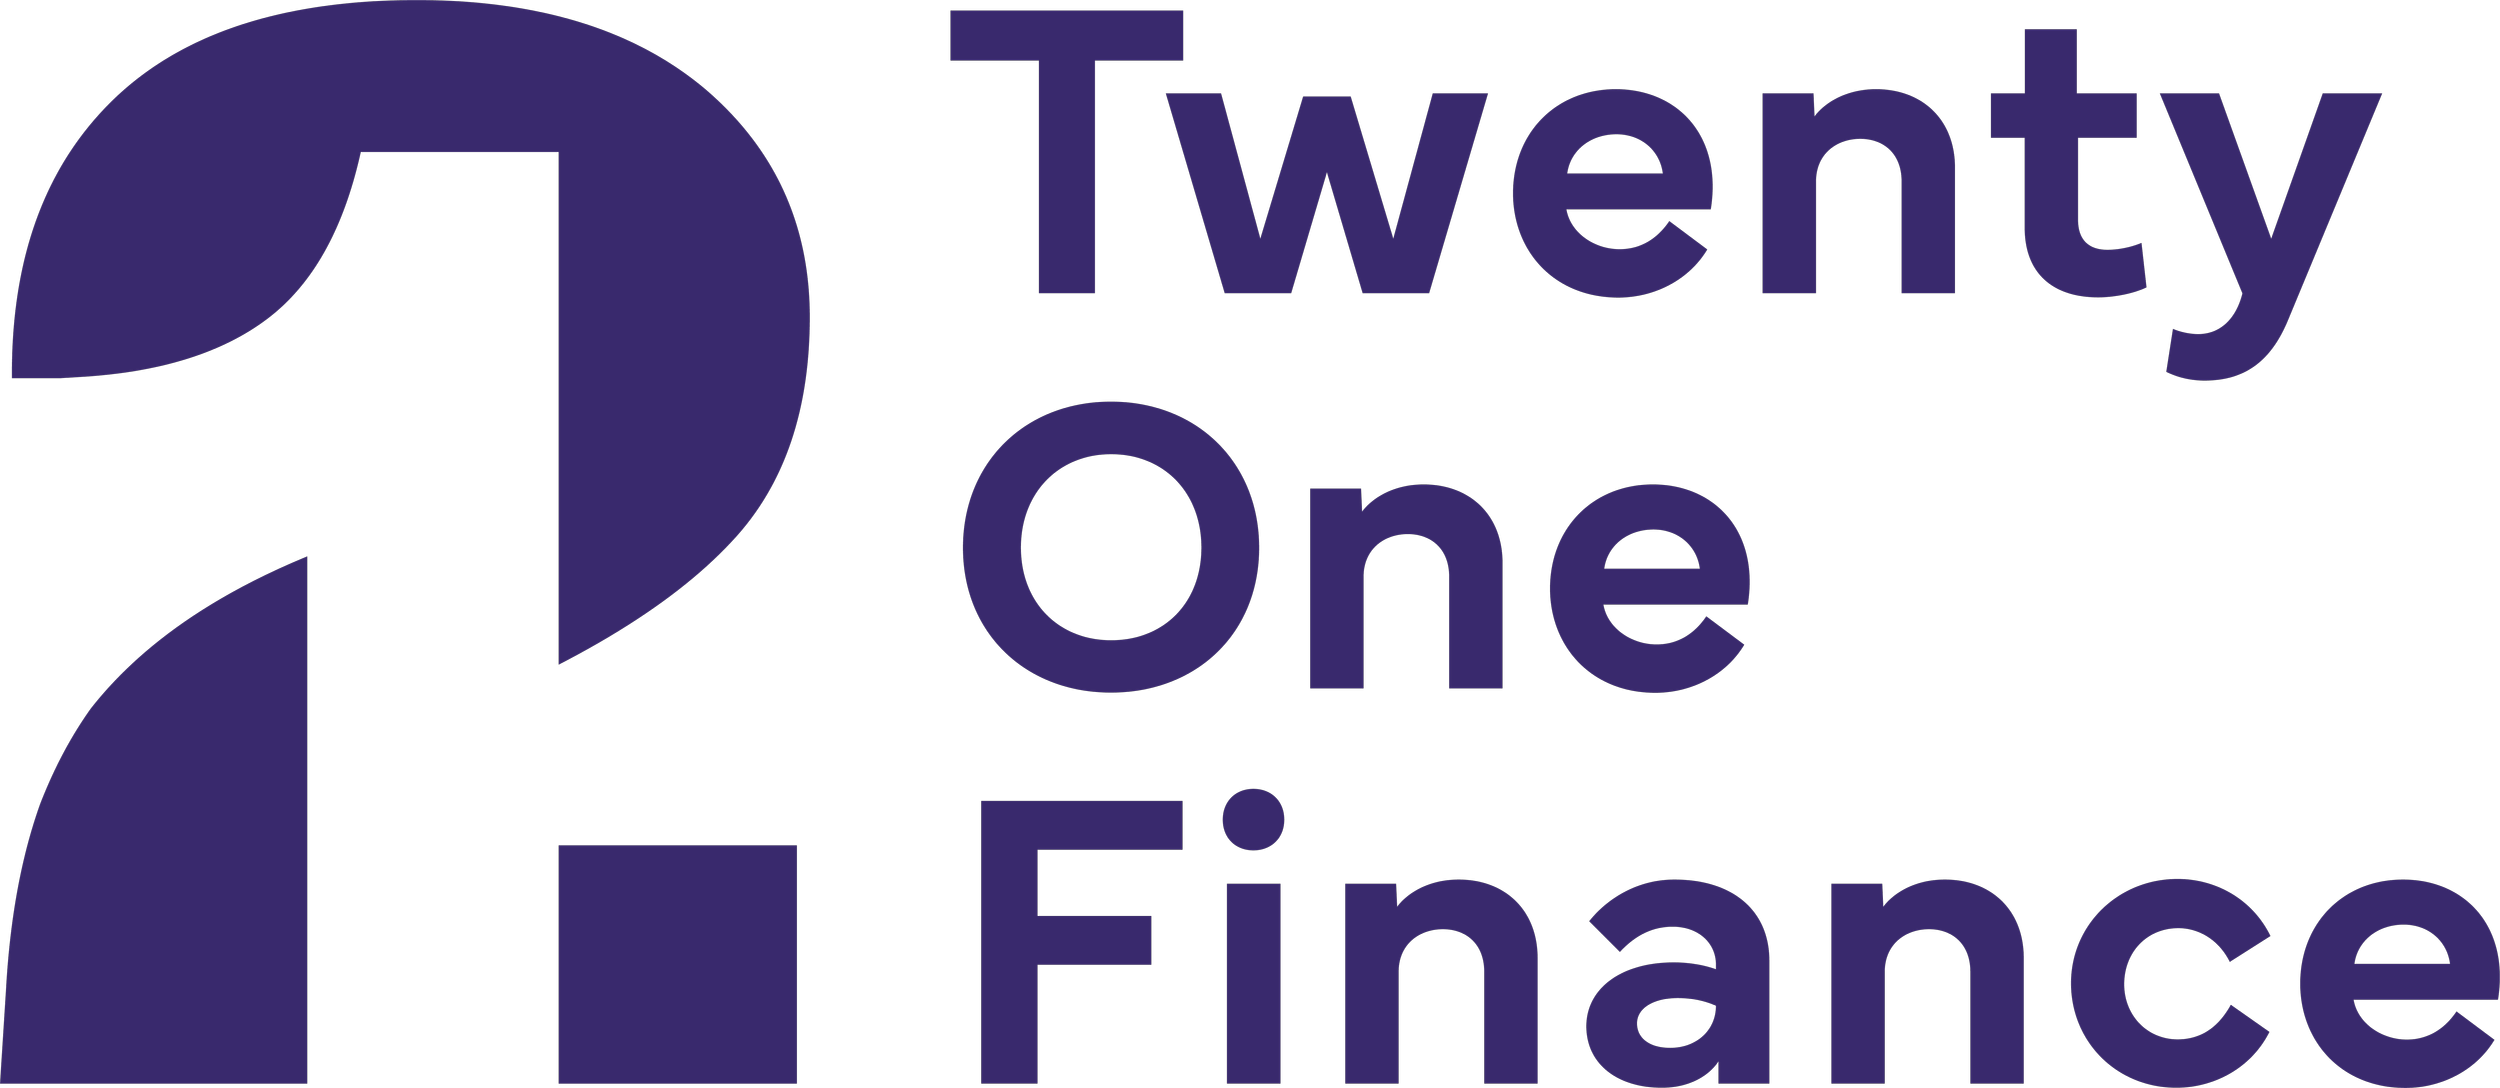 21Finance full logo.png